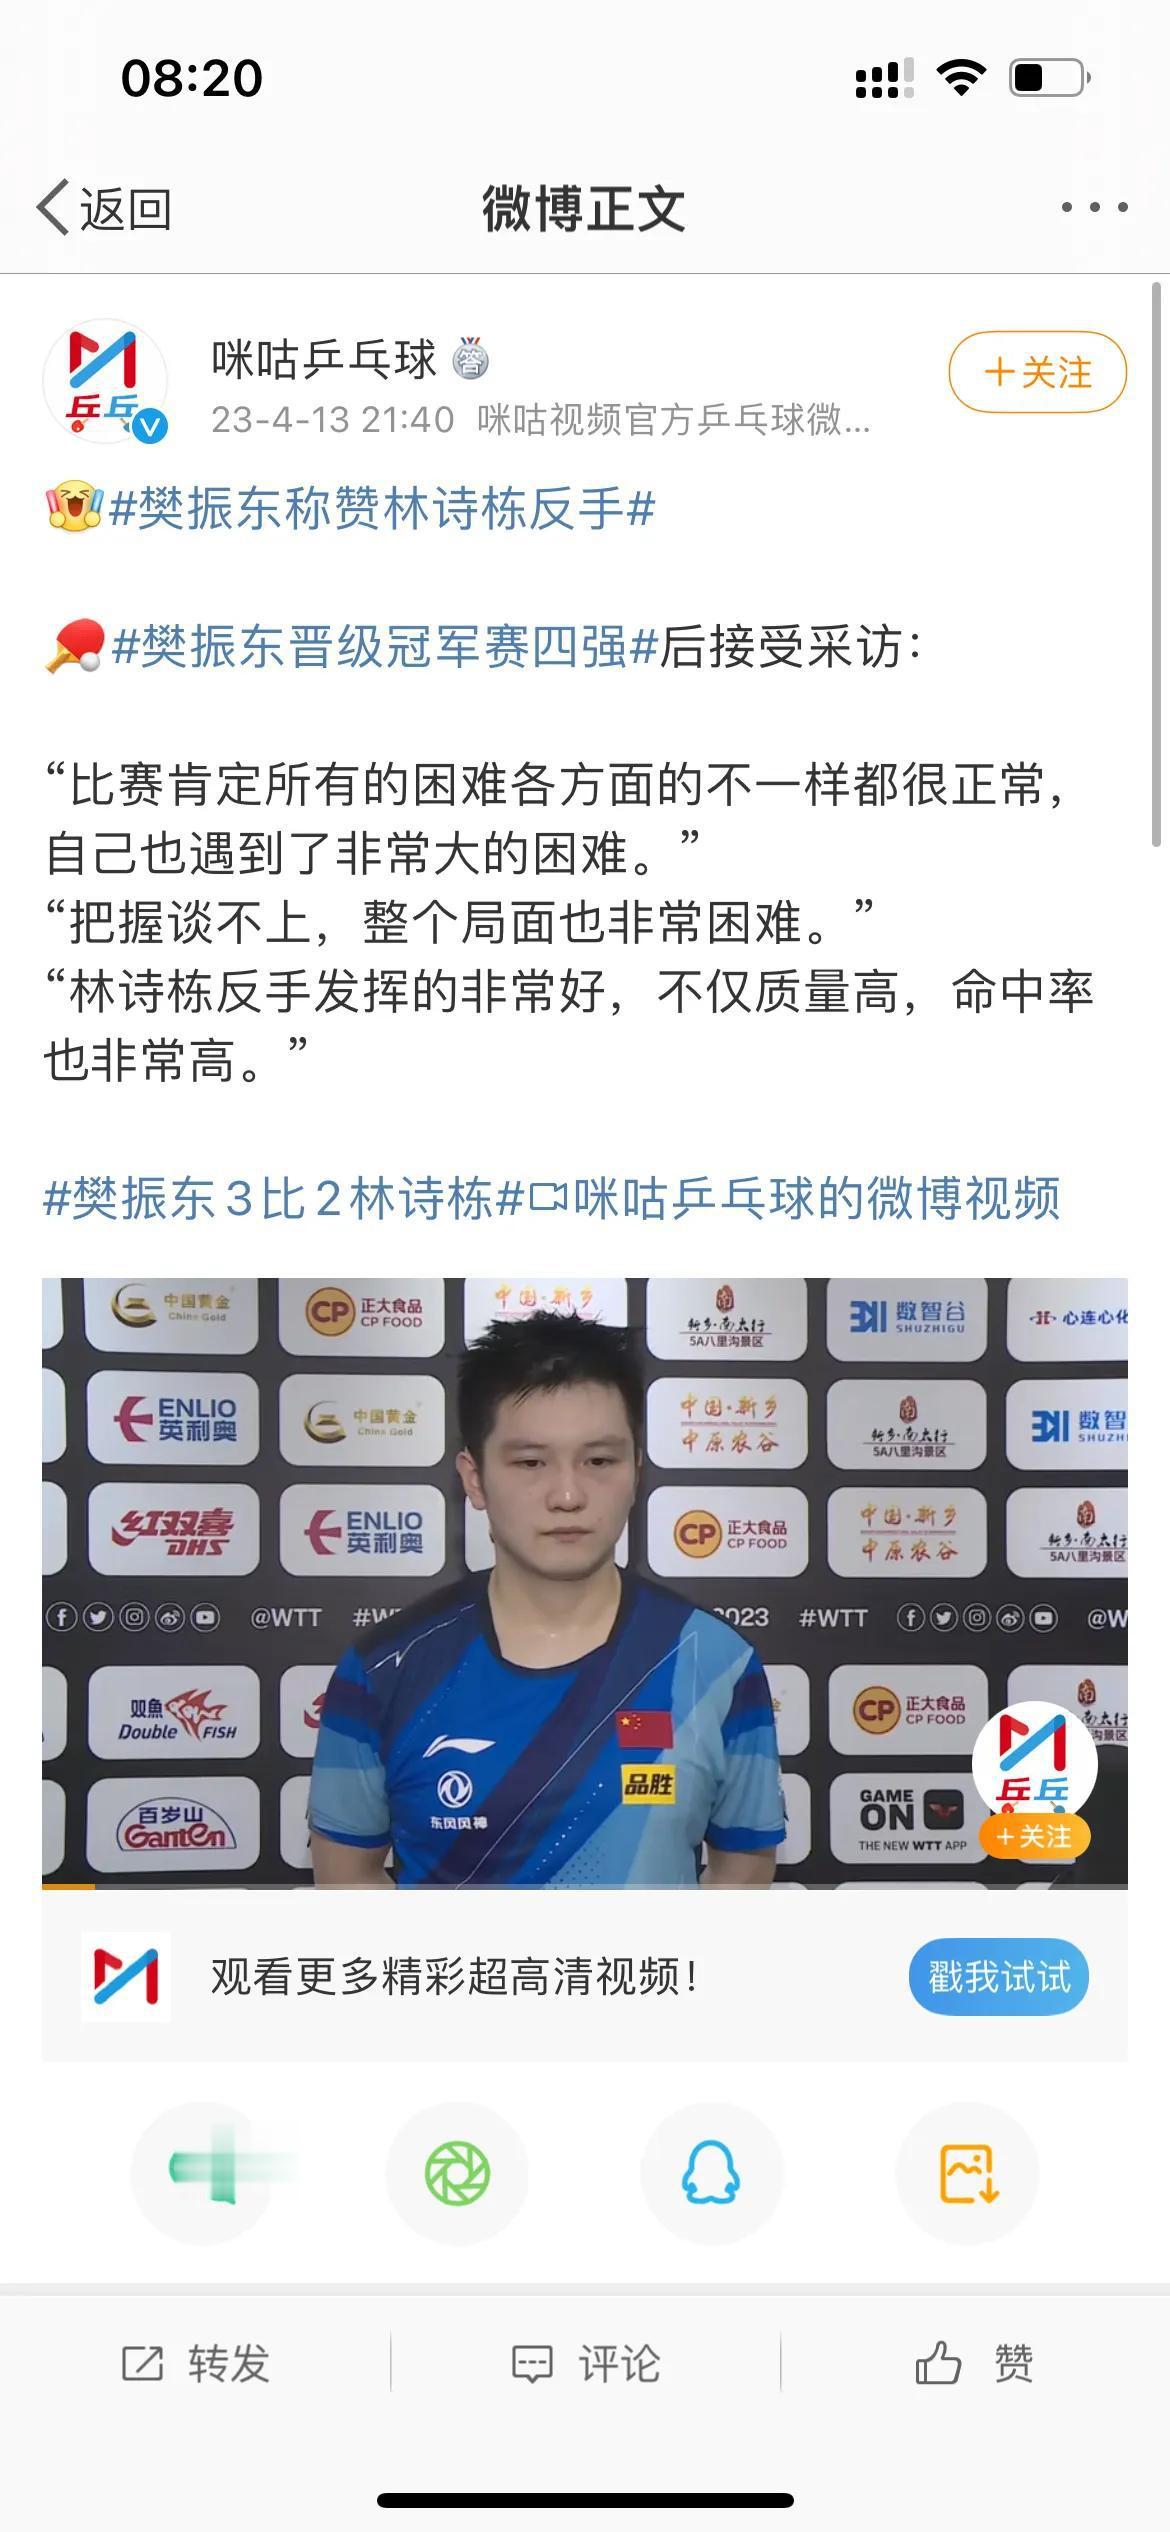 樊振东赢球晋级却高兴不起来！赛后采访表达担忧，国乒一哥也感觉到重大危机了！

在(1)